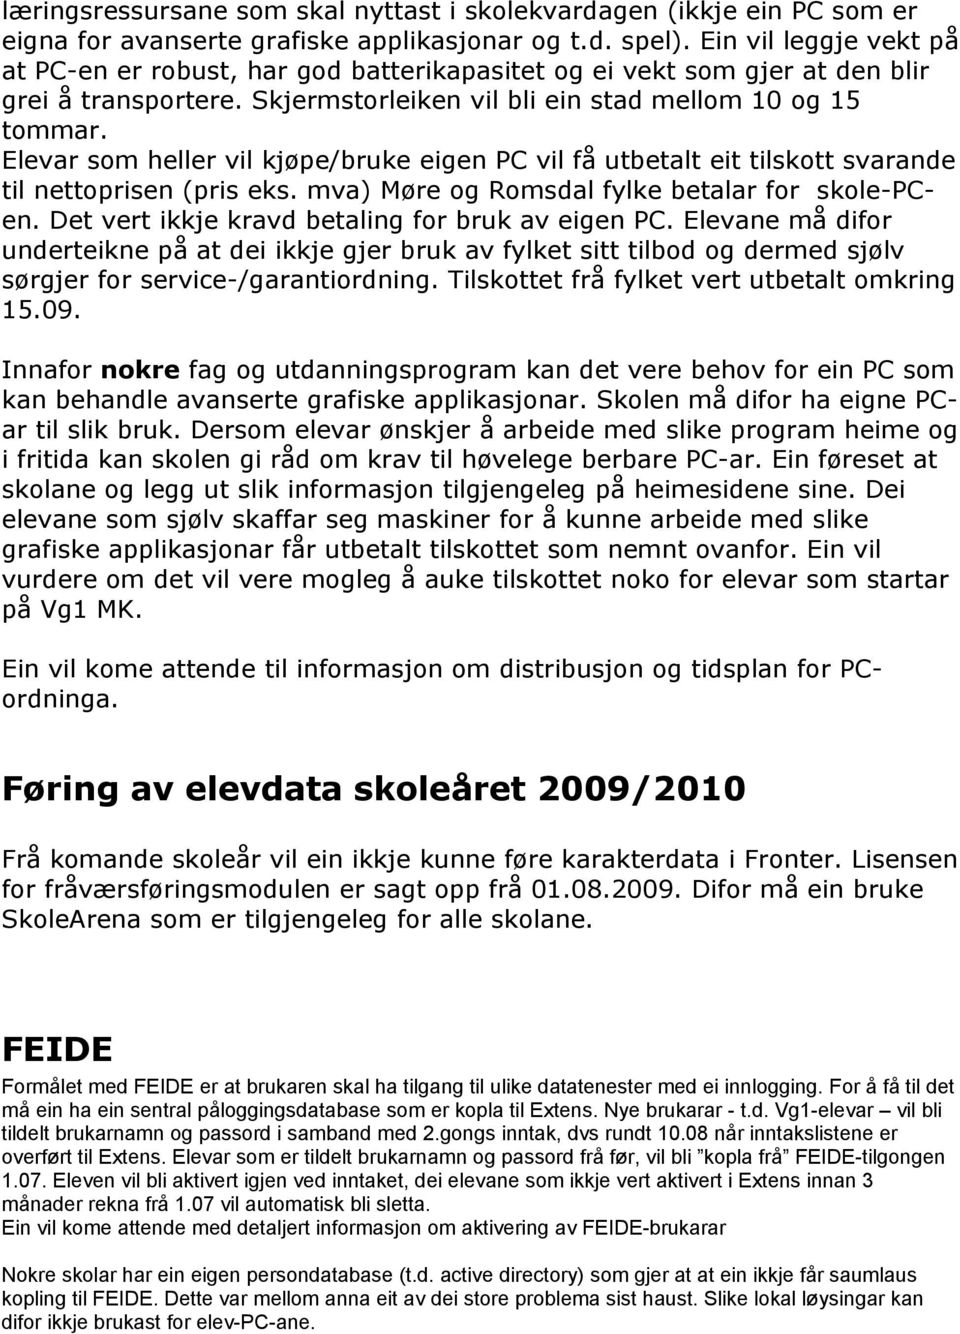 Elevar som heller vil kjøpe/bruke eigen PC vil få utbetalt eit tilskott svarande til nettoprisen (pris eks. mva) Møre og Romsdal fylke betalar for skole-pcen.